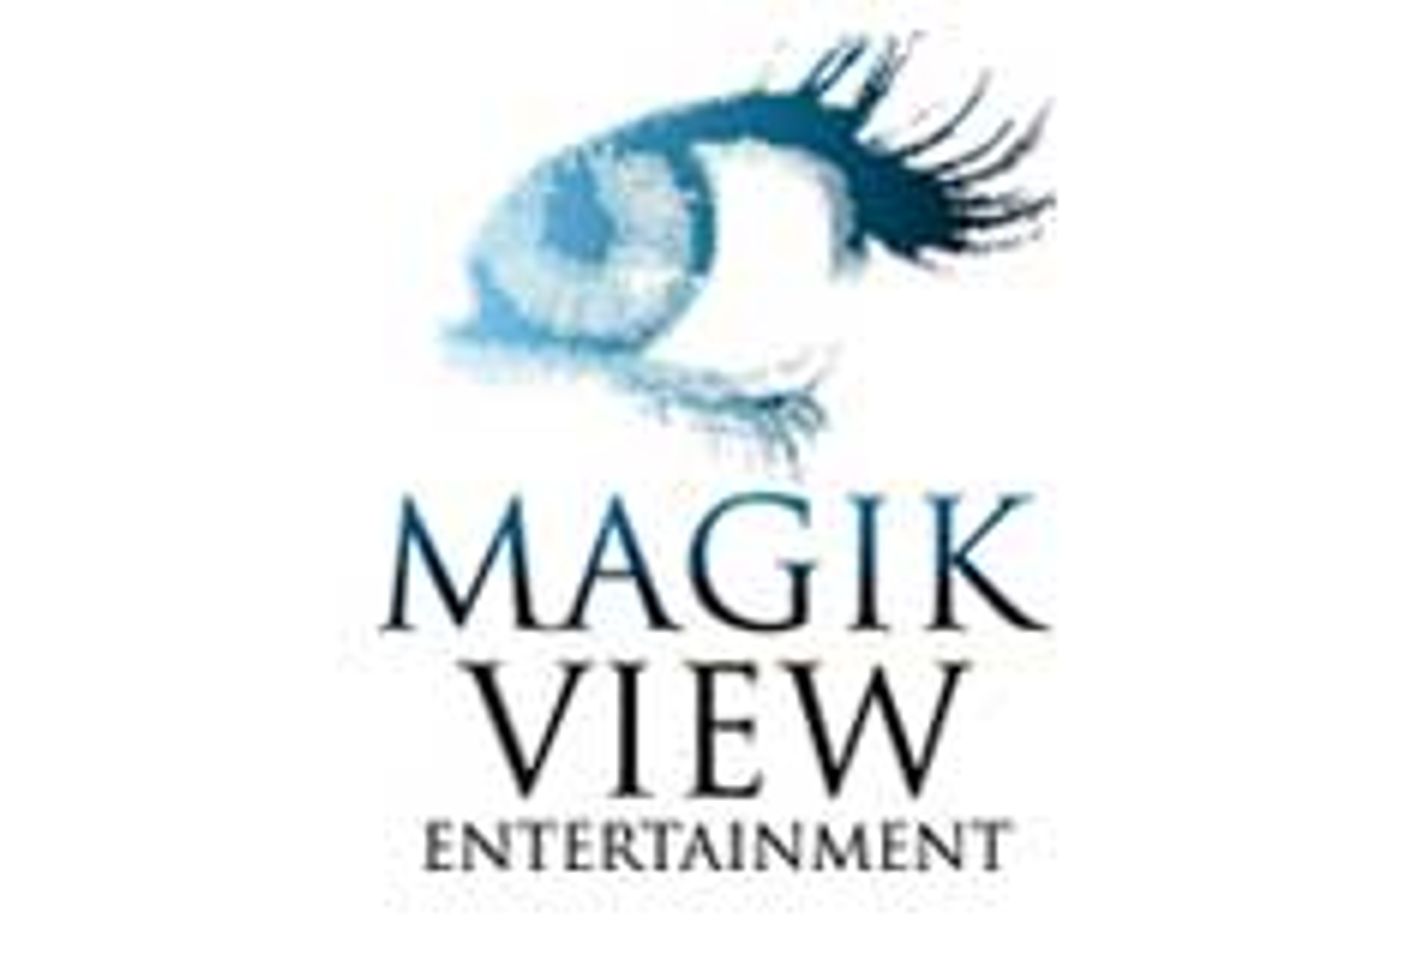 MagikView Entertaiment Triumphs at AVN Awards